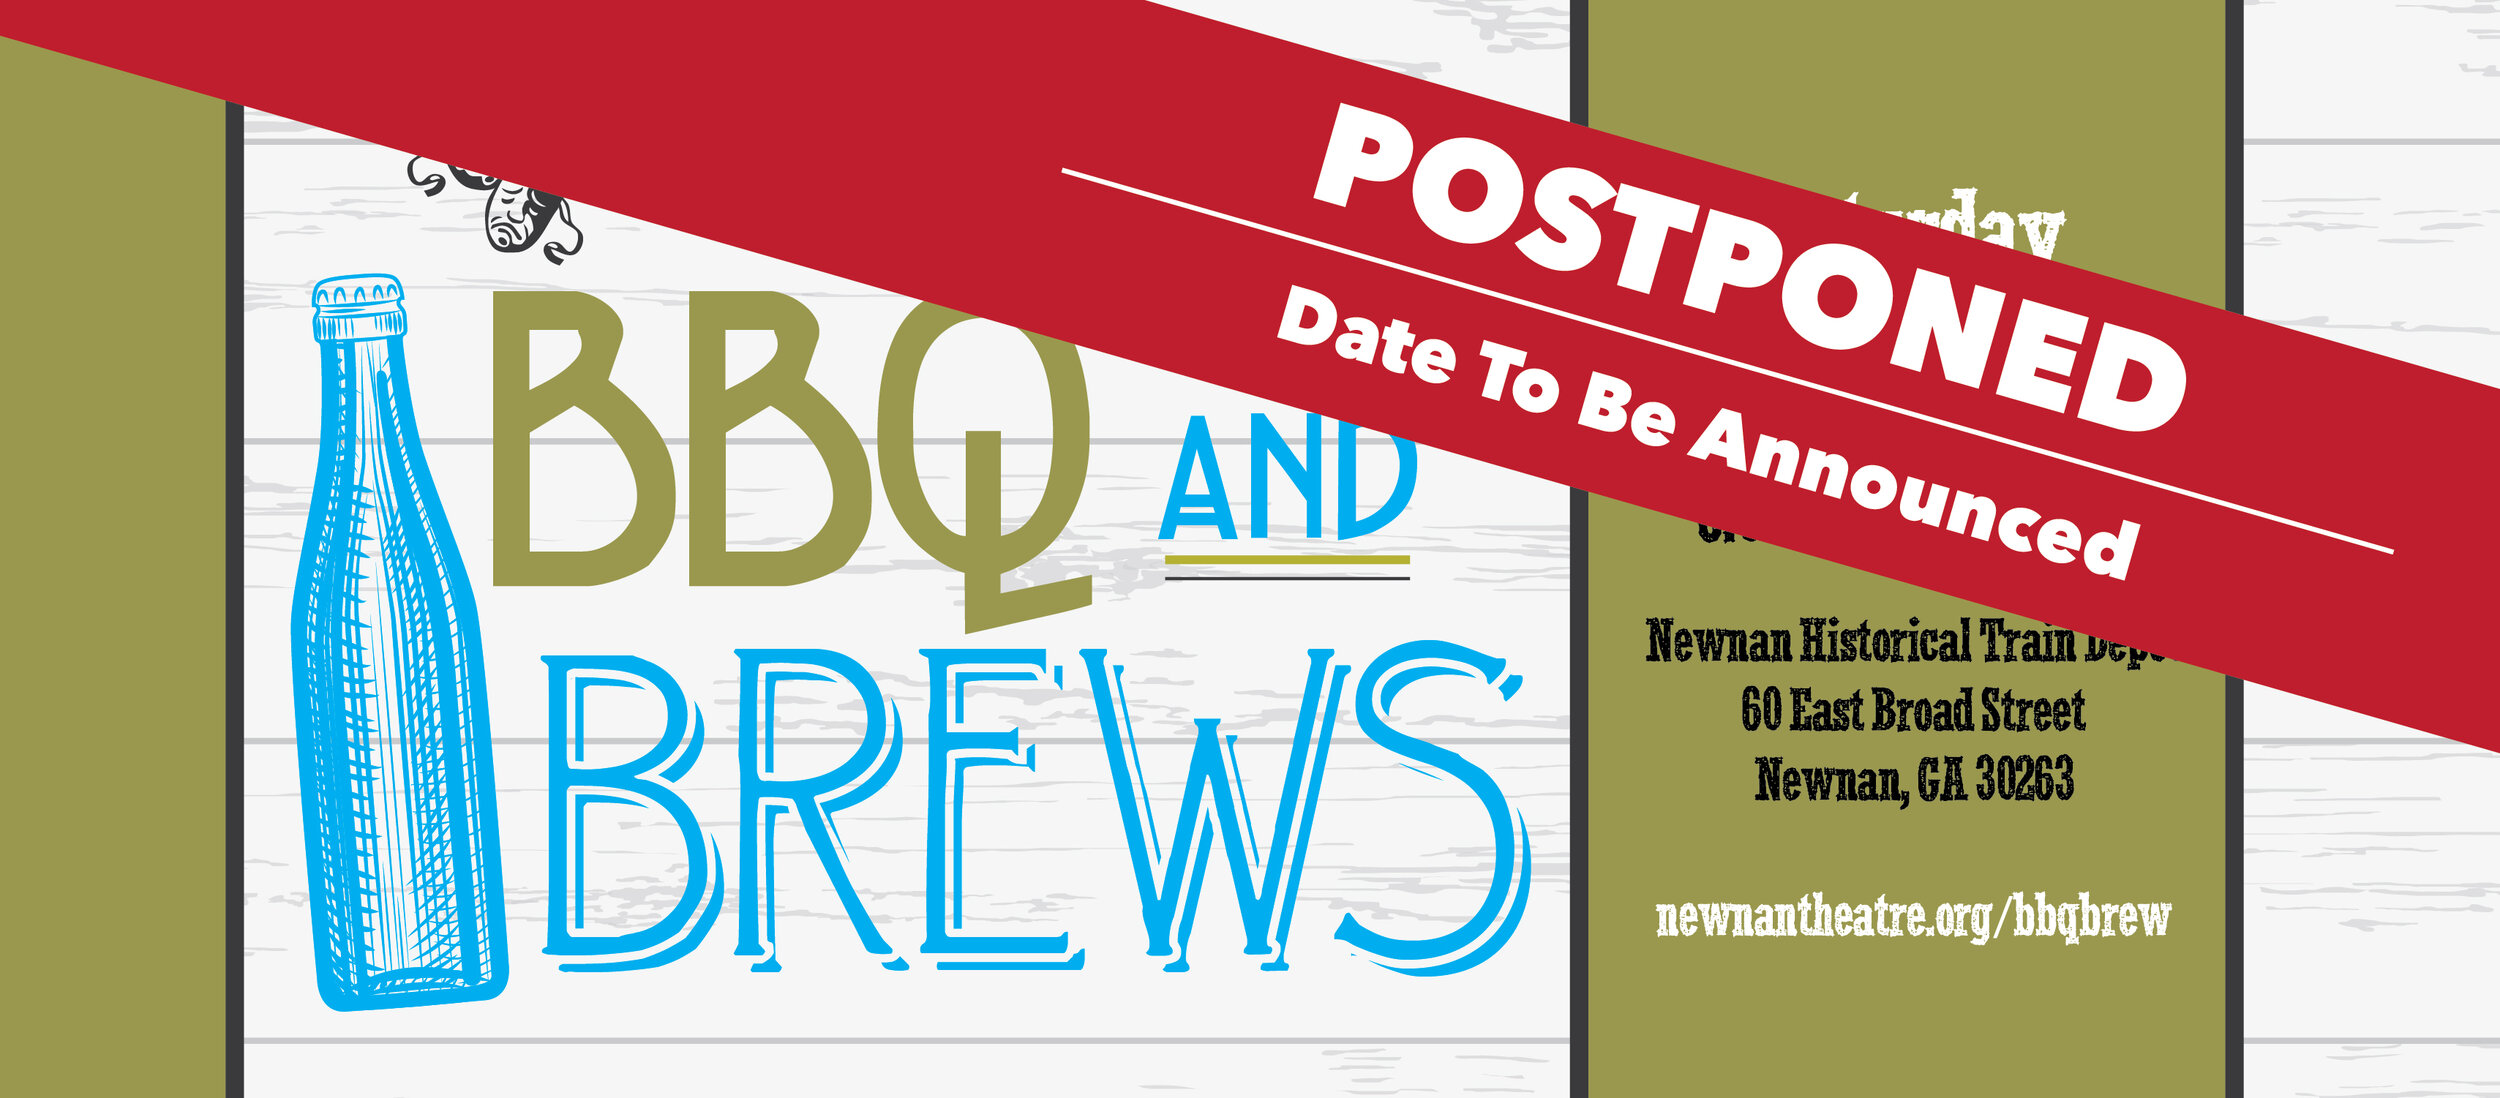 bbq brew web banner-01.jpg